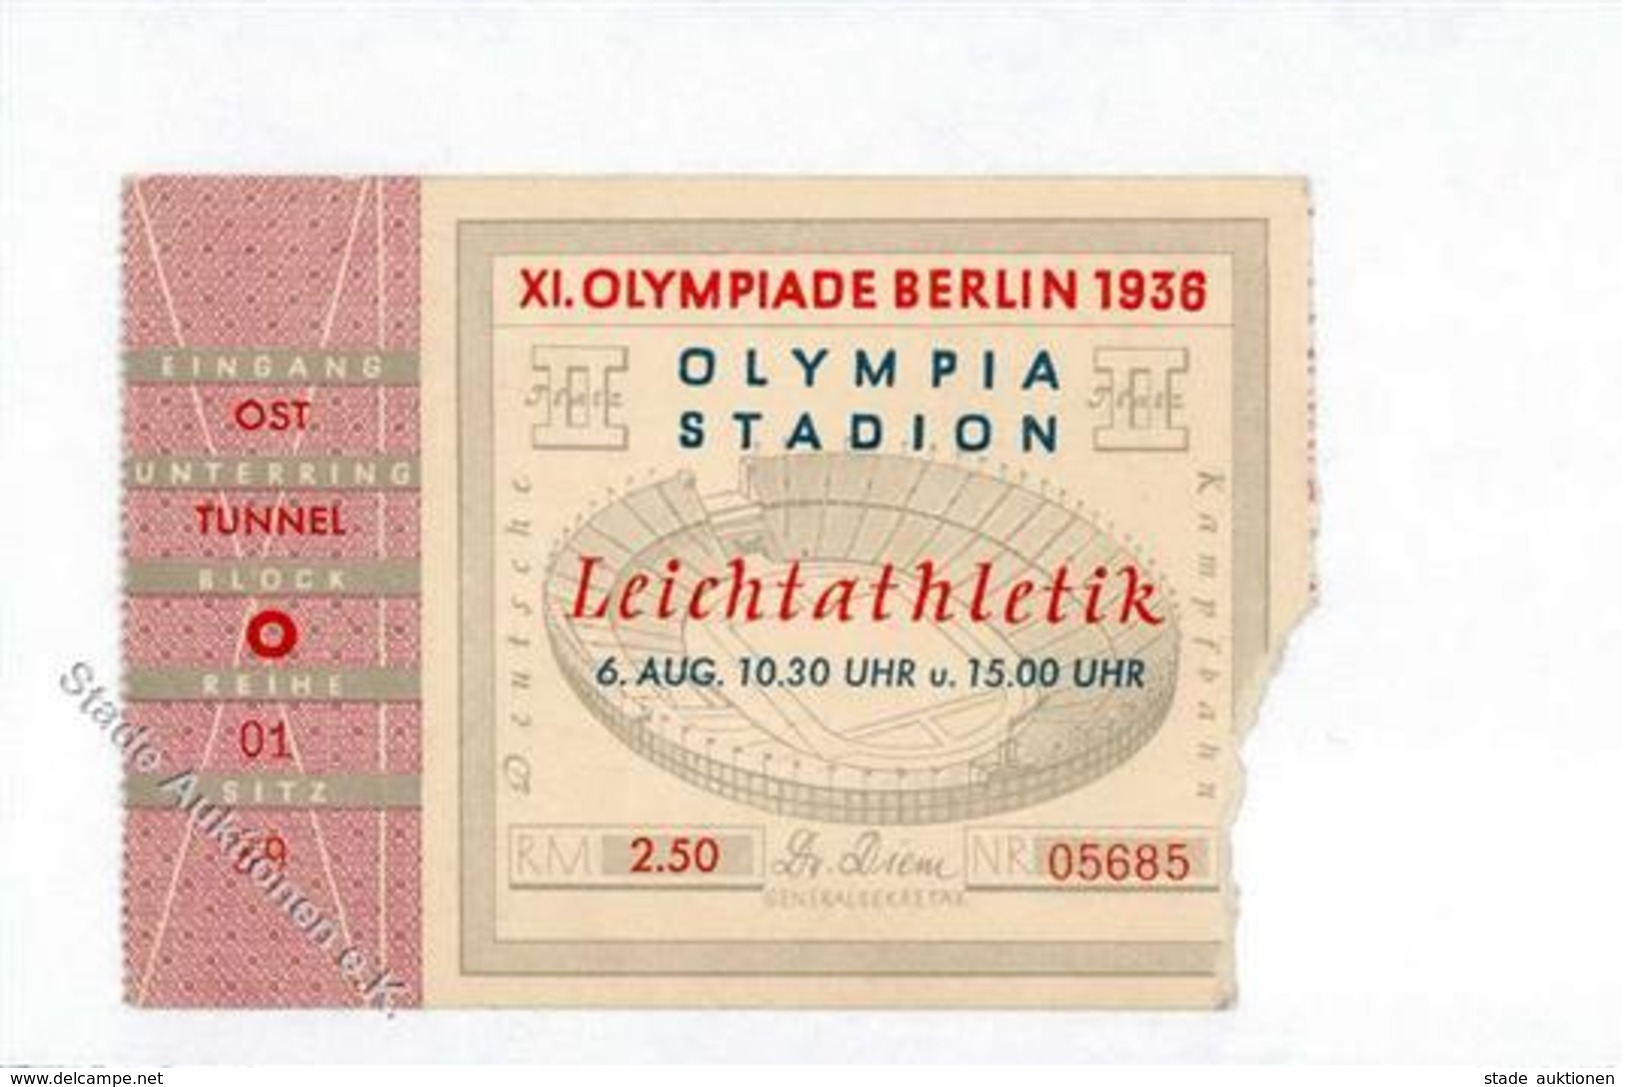 Olympiade 1936 Berlin Mitte (1000) Eintrittskarte Leichtathletik I-II - Olympische Spiele